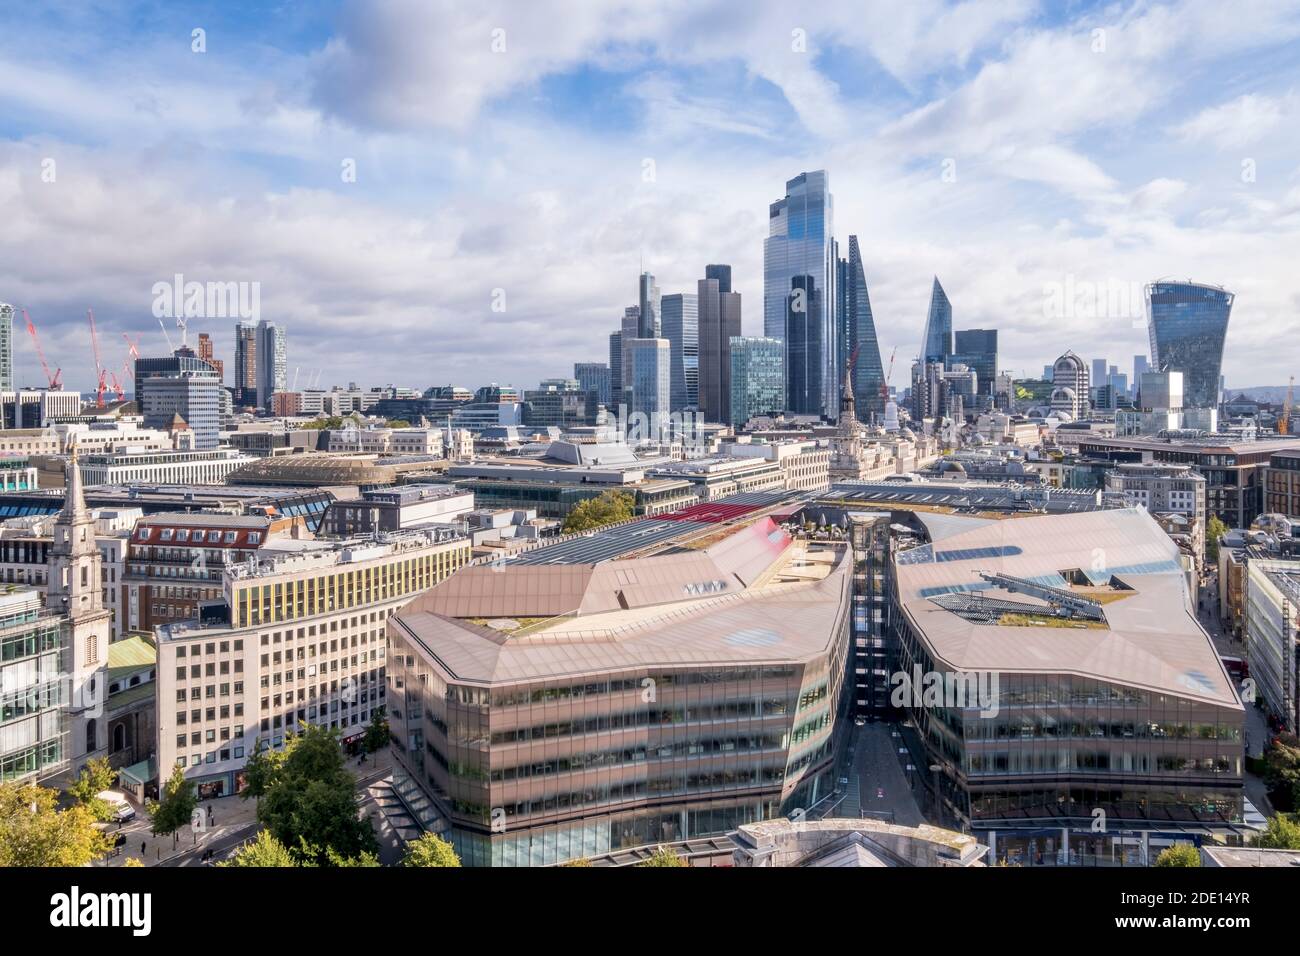 Los rascacielos del distrito financiero y de negocios de la ciudad de Londres con el centro comercial One New Change en primer plano, Londres Foto de stock